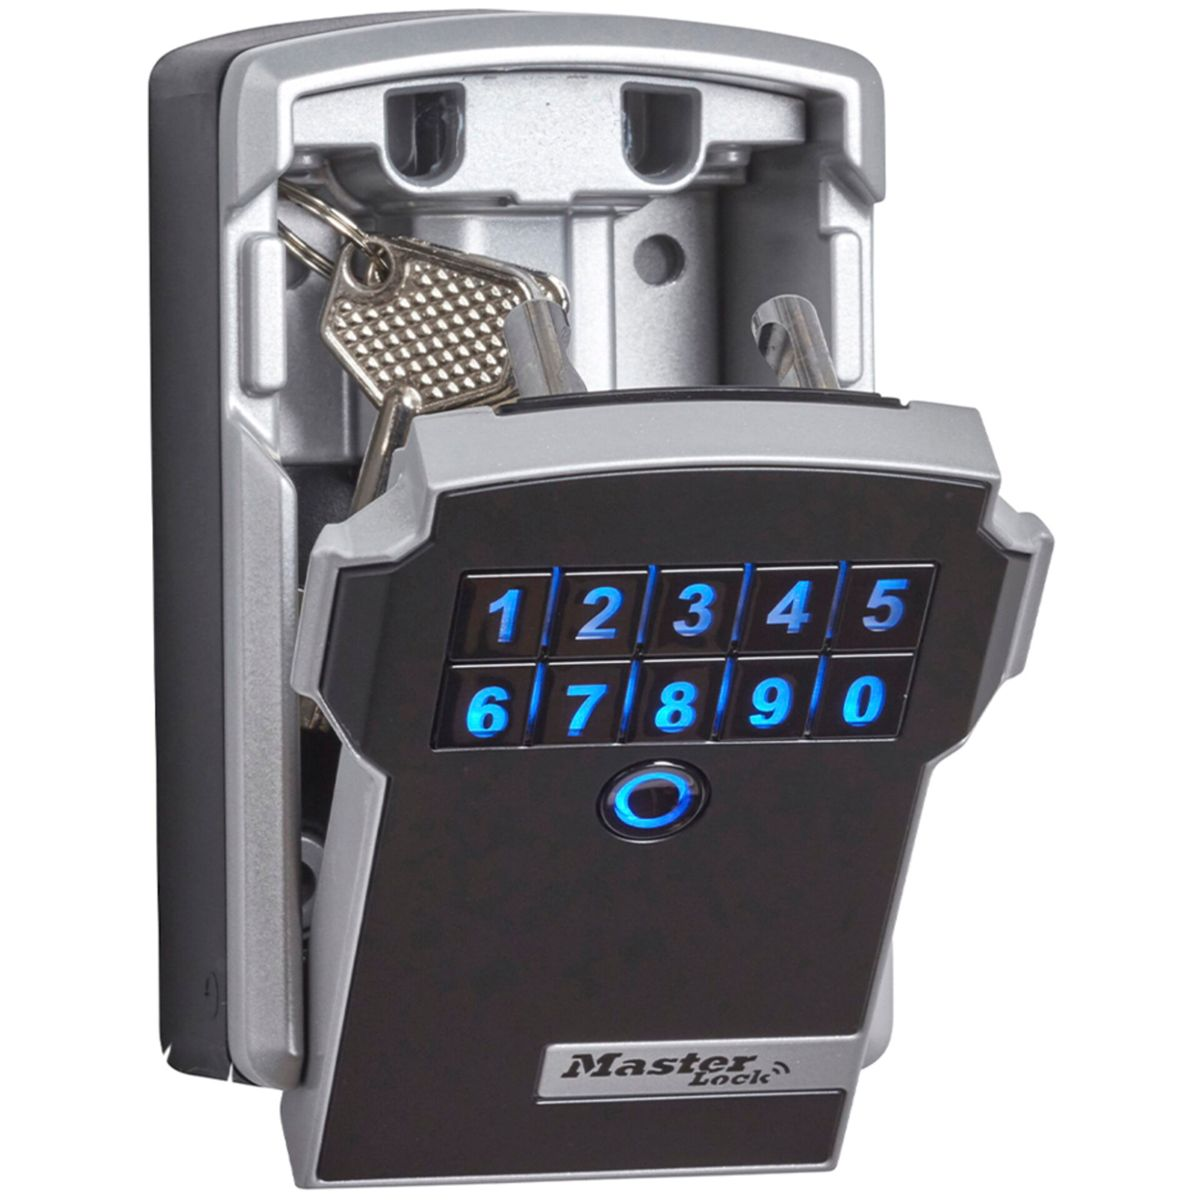 MASTERLOCK Master Lock grau 5441EURD Bluetooth / schwarz Schlüsselkasten Schlüsseltresor grau schwarz